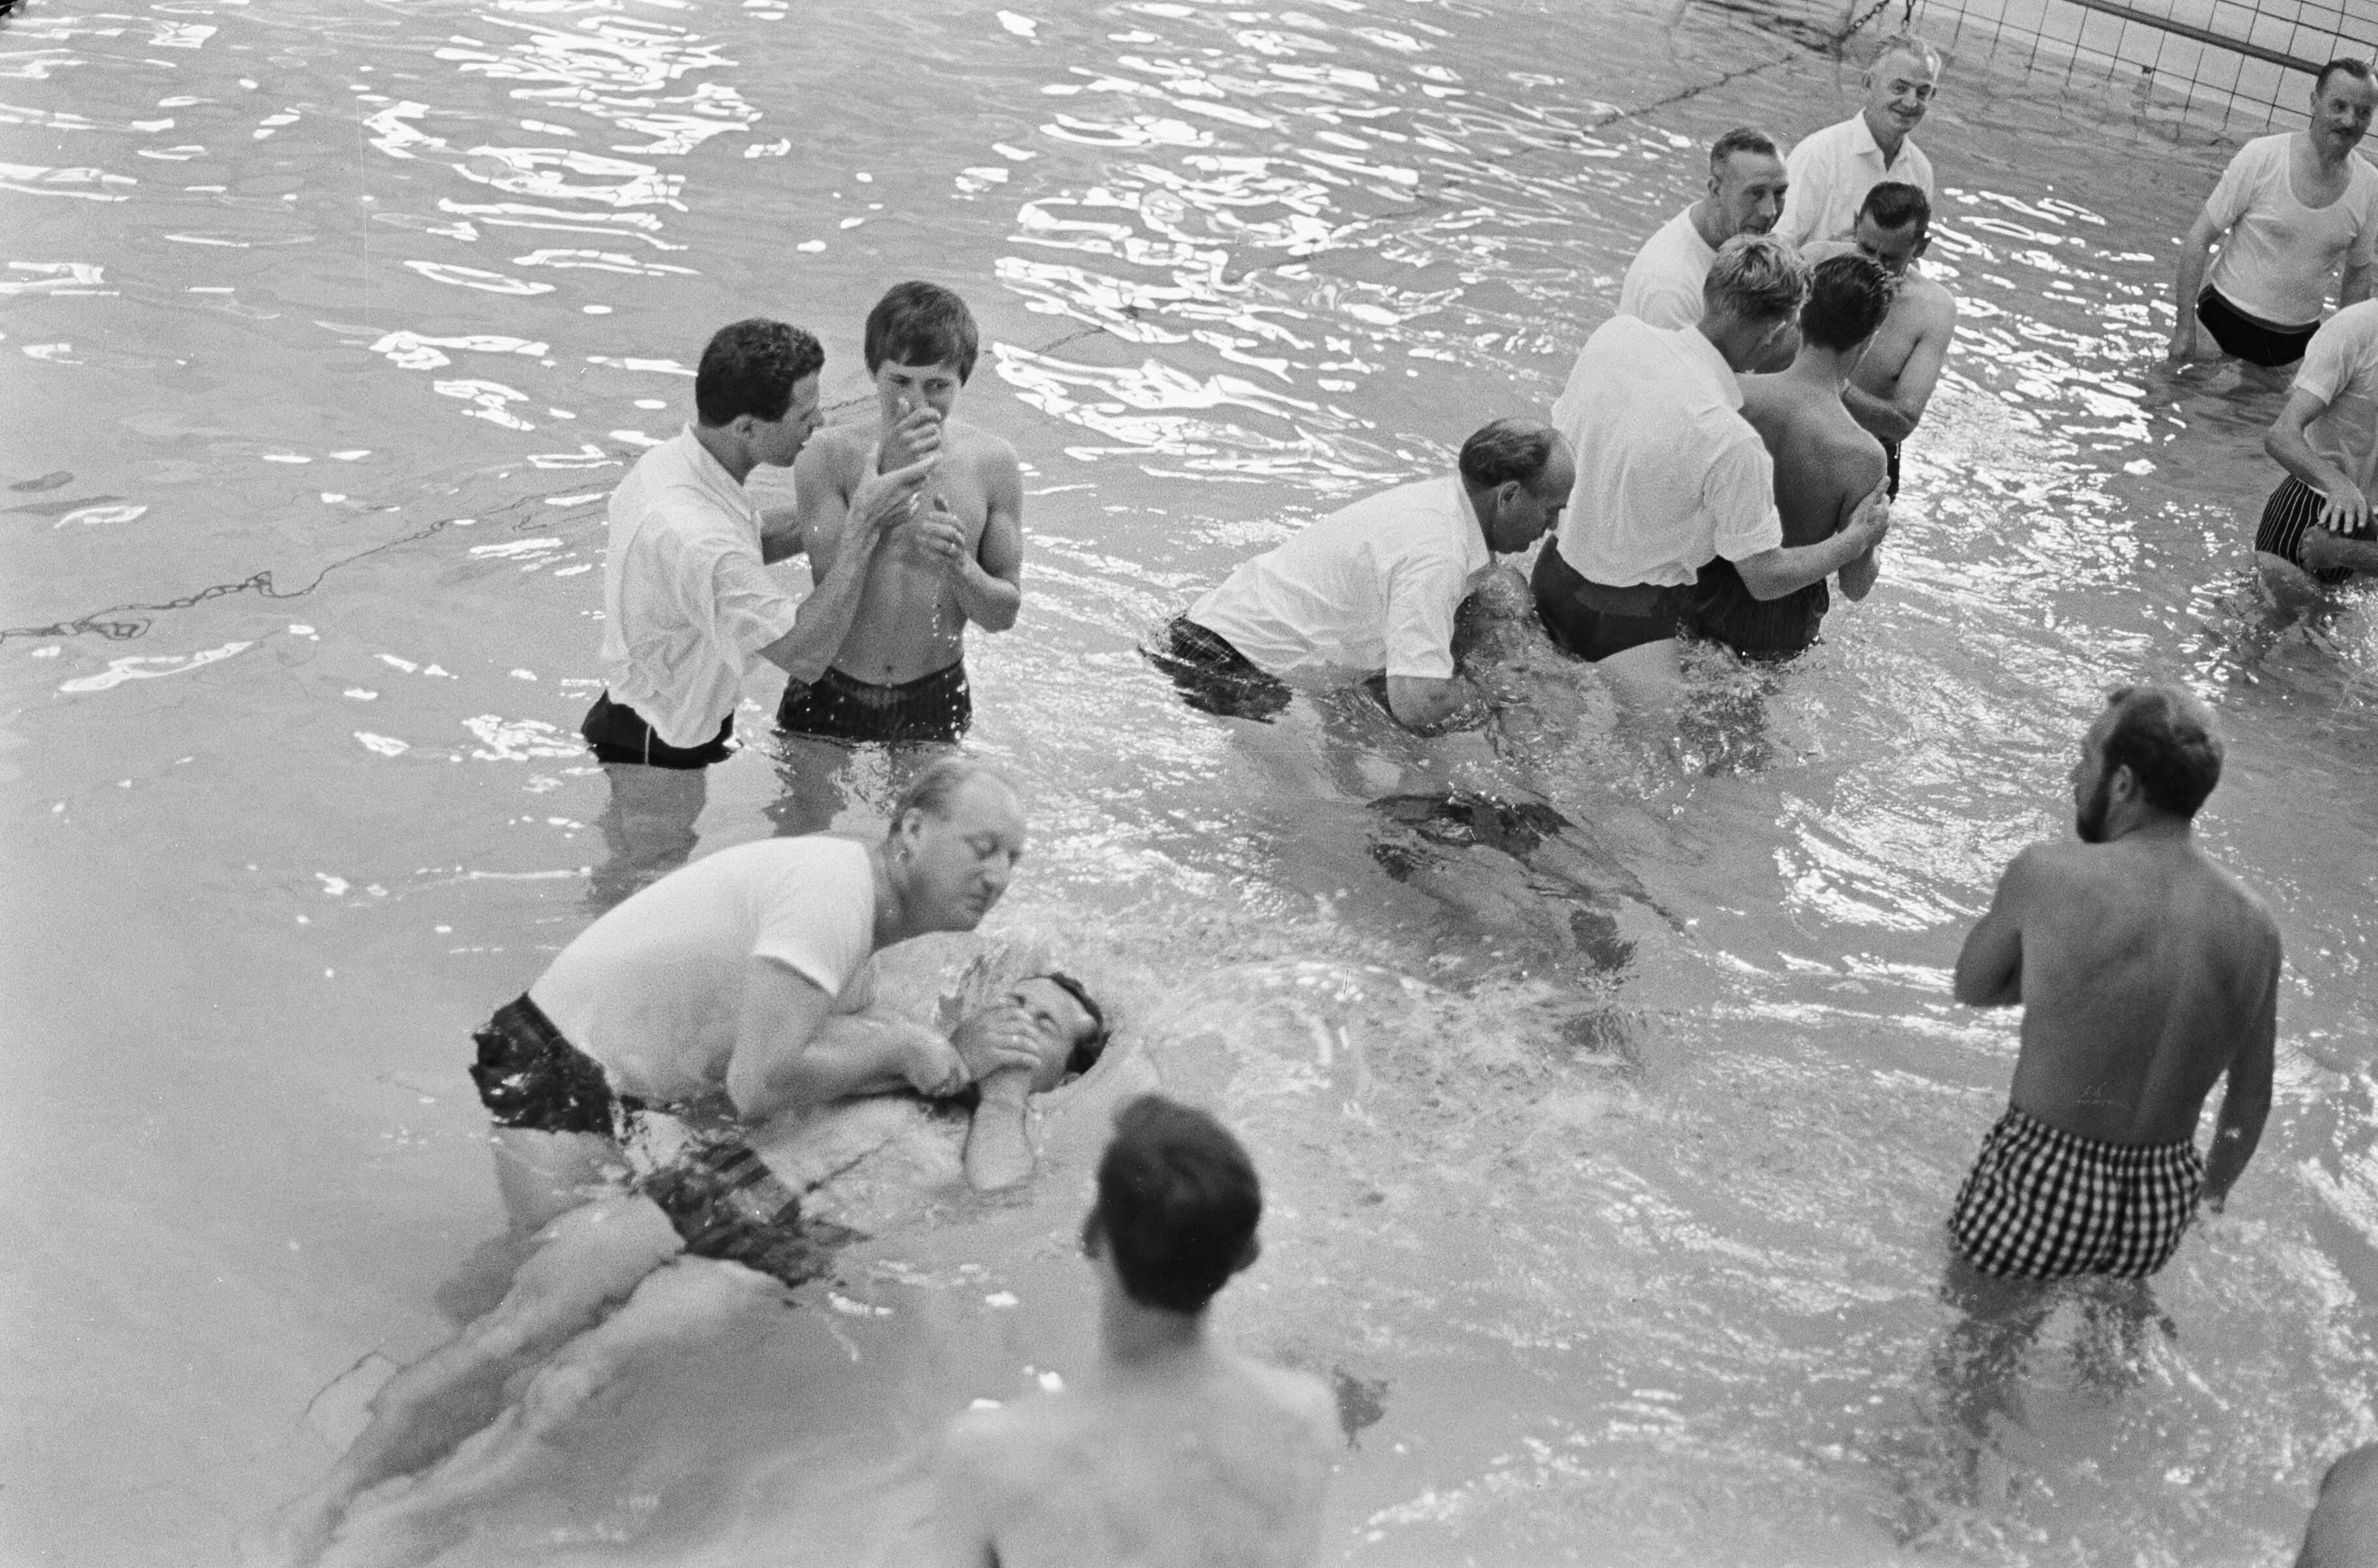 1966 - Doopplechtigheid in Zuiderbad in Amsterdam van Jehova-getuigen